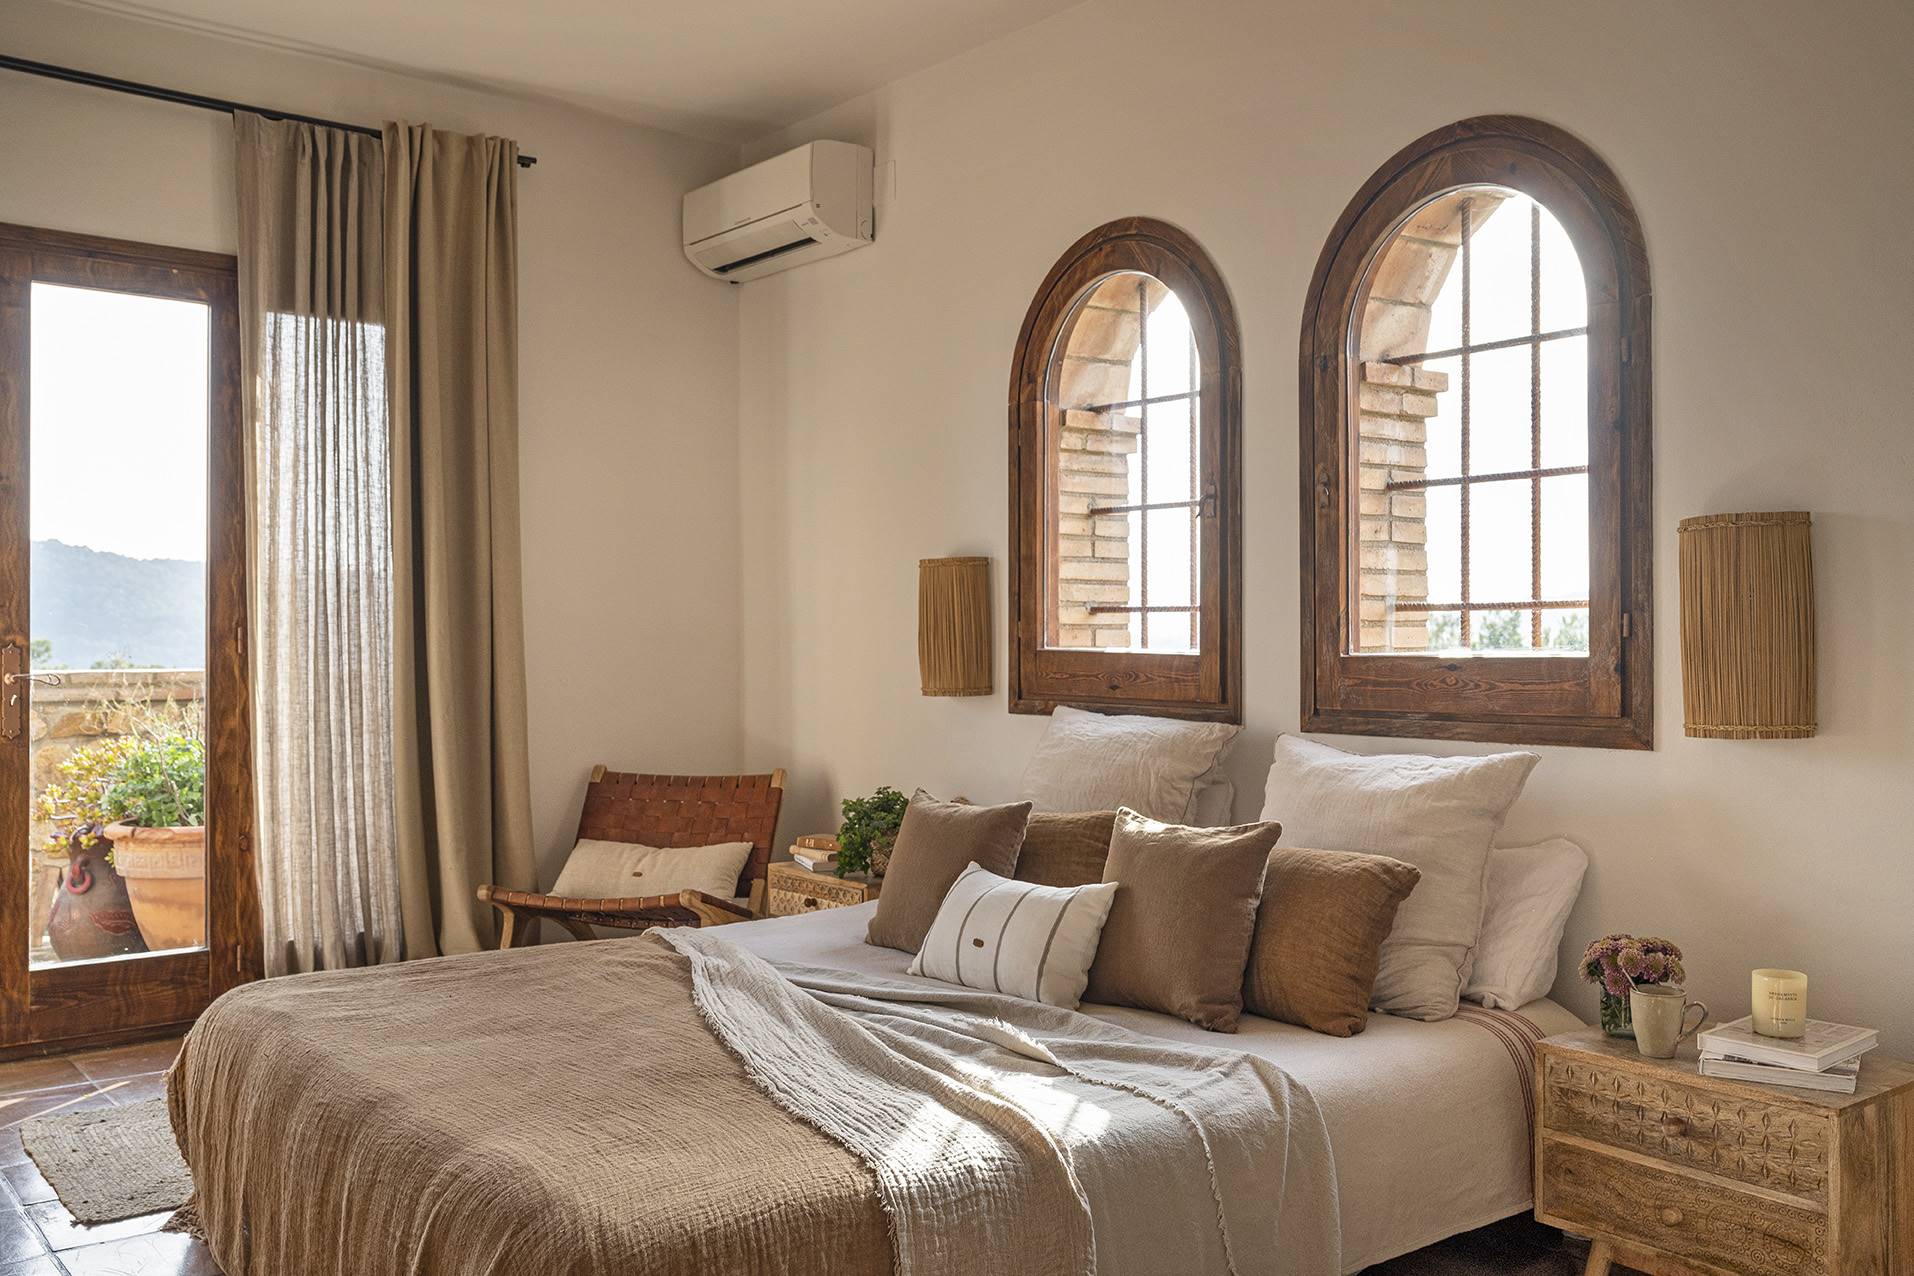 Un dormitorio de estilo rústico y minimalista con muebles en fibras naturales. 